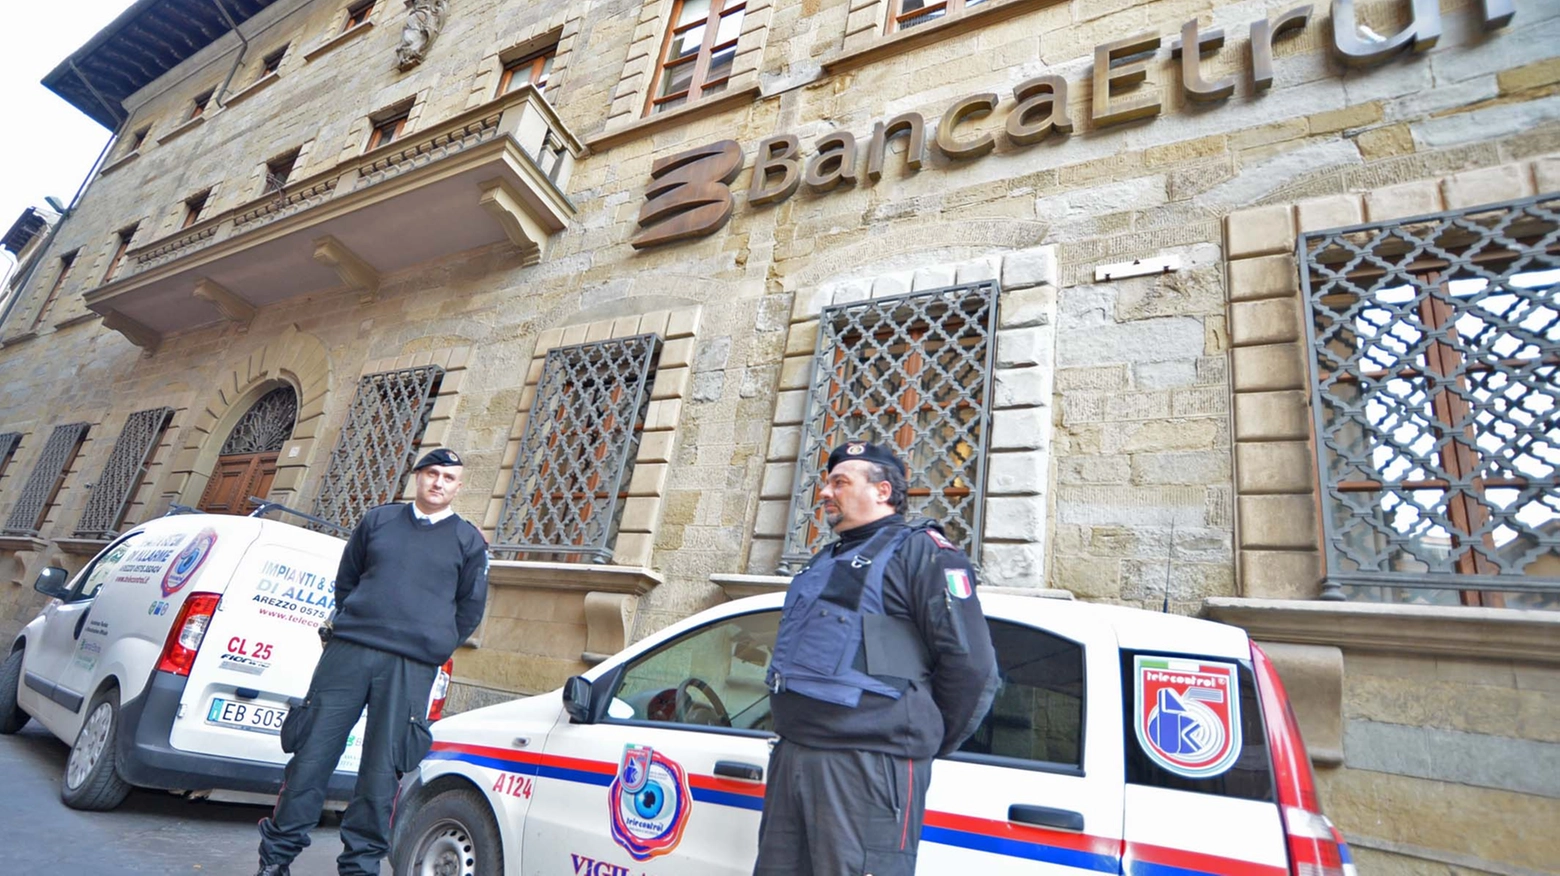 Vigilantes davanti a Banca Etruria